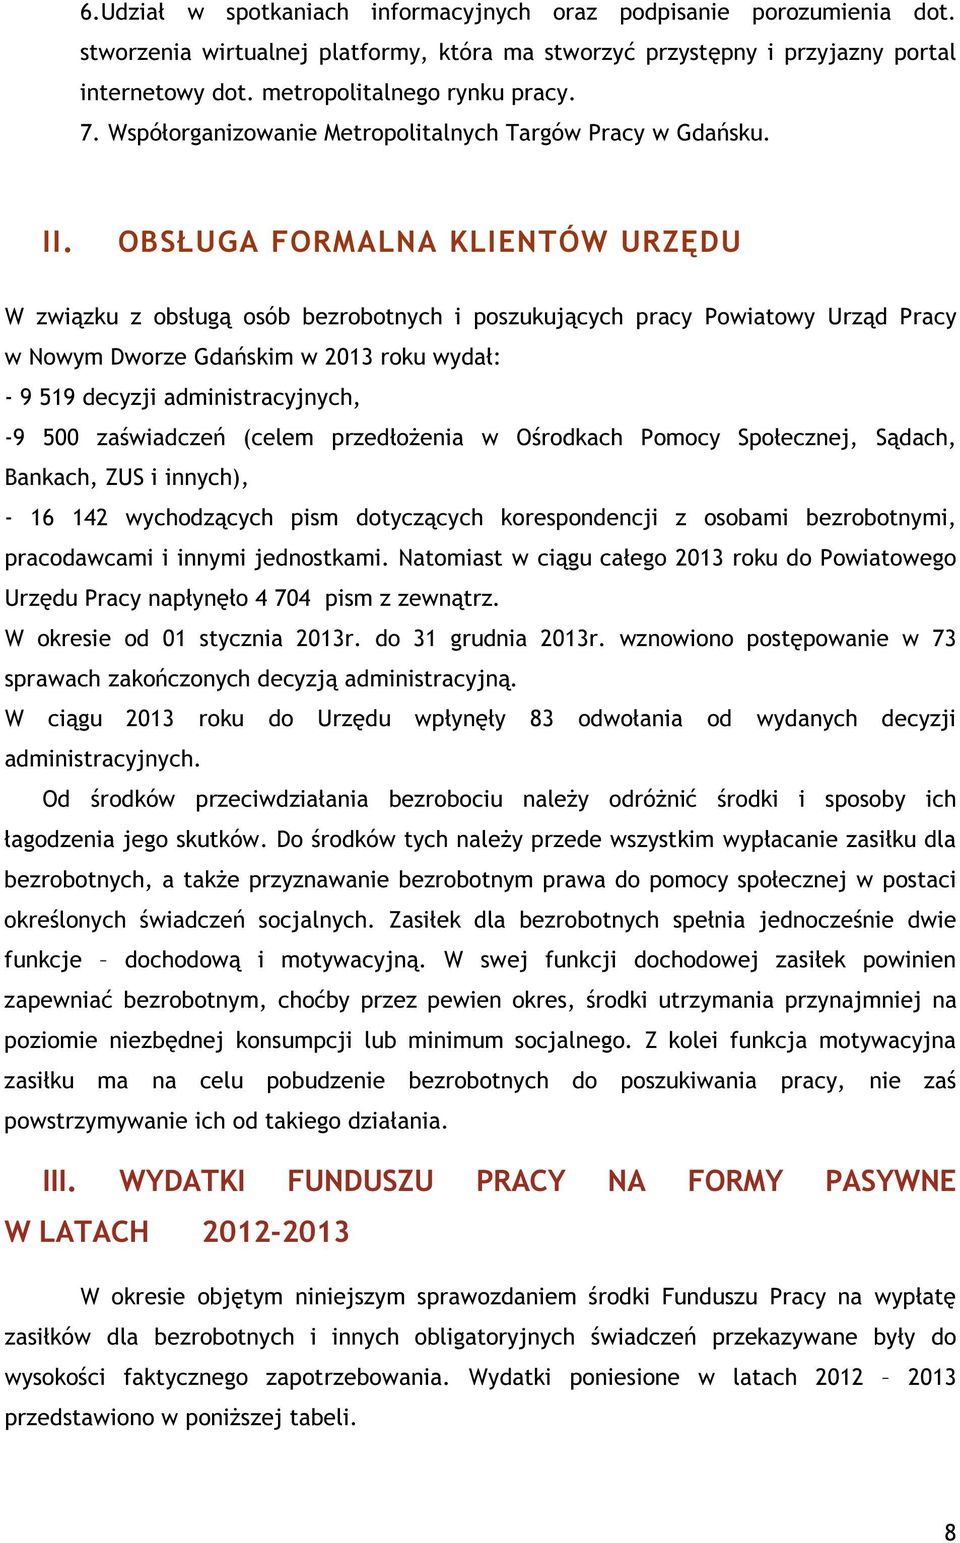 OBSŁUGA FORMALNA KLIENTÓW URZĘDU W związku z obsługą osób bezrobotnych i poszukujących pracy Powiatowy Urząd Pracy w Nowym Dworze Gdańskim w 2013 roku wydał: - 9 519 decyzji administracyjnych, -9 500